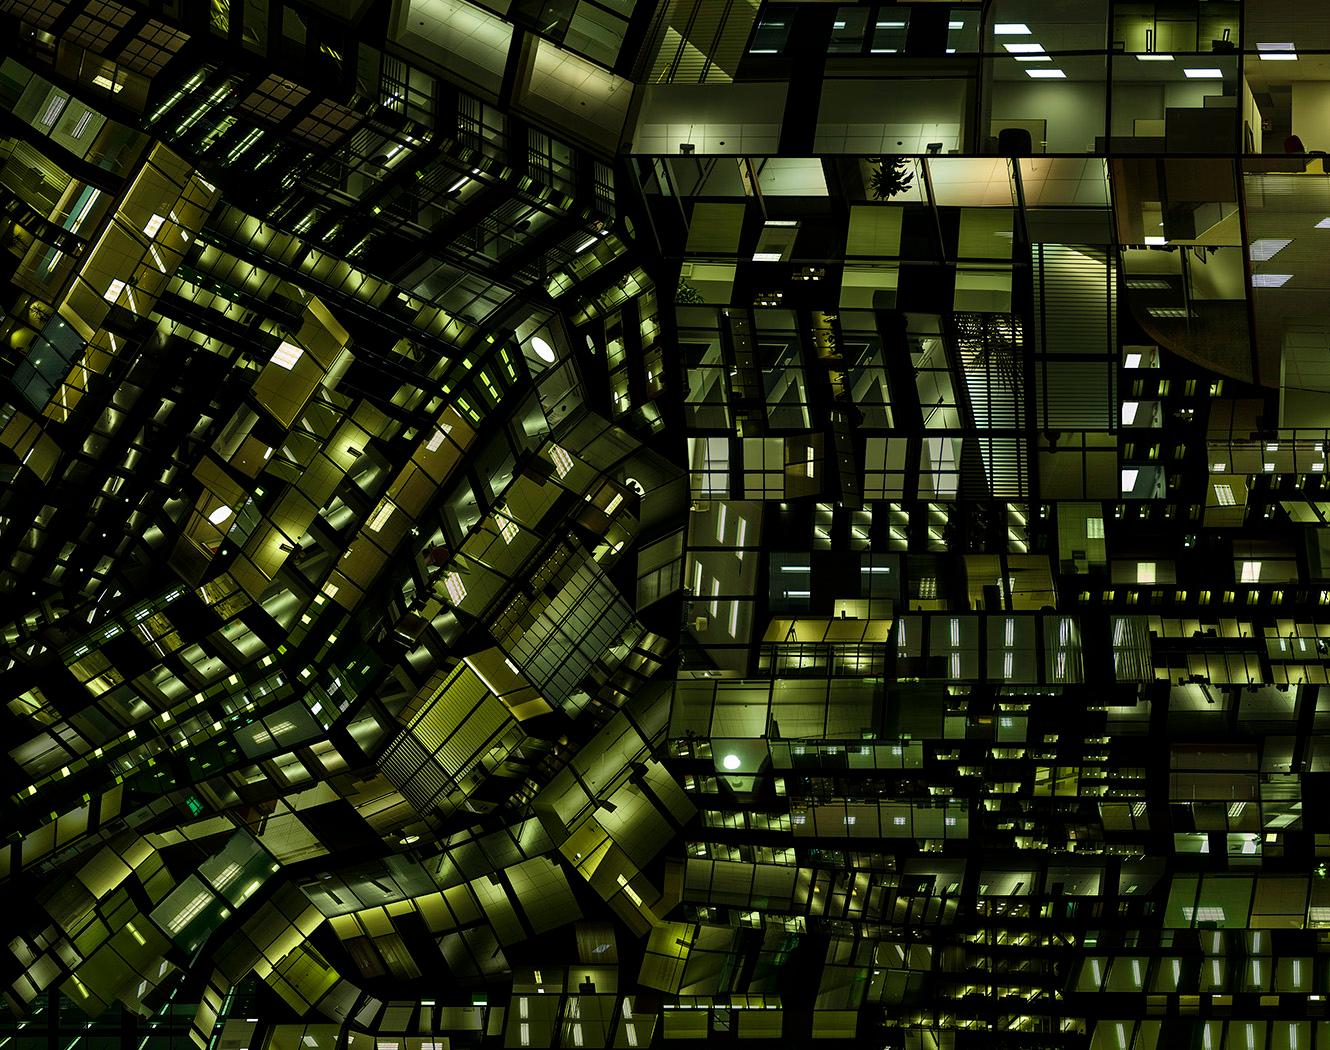 Urban Codes - Zeitgenössische abstrakte architektonische Stadtfotografie bei Nacht
Lichtdiagramm 05
Auflage 2/3 + 1 AP
C-Print ist ungerahmt und wird mit einem signierten Aufkleber versandt.

Die künstlerischen Arbeiten von Hubert Blanz befassen